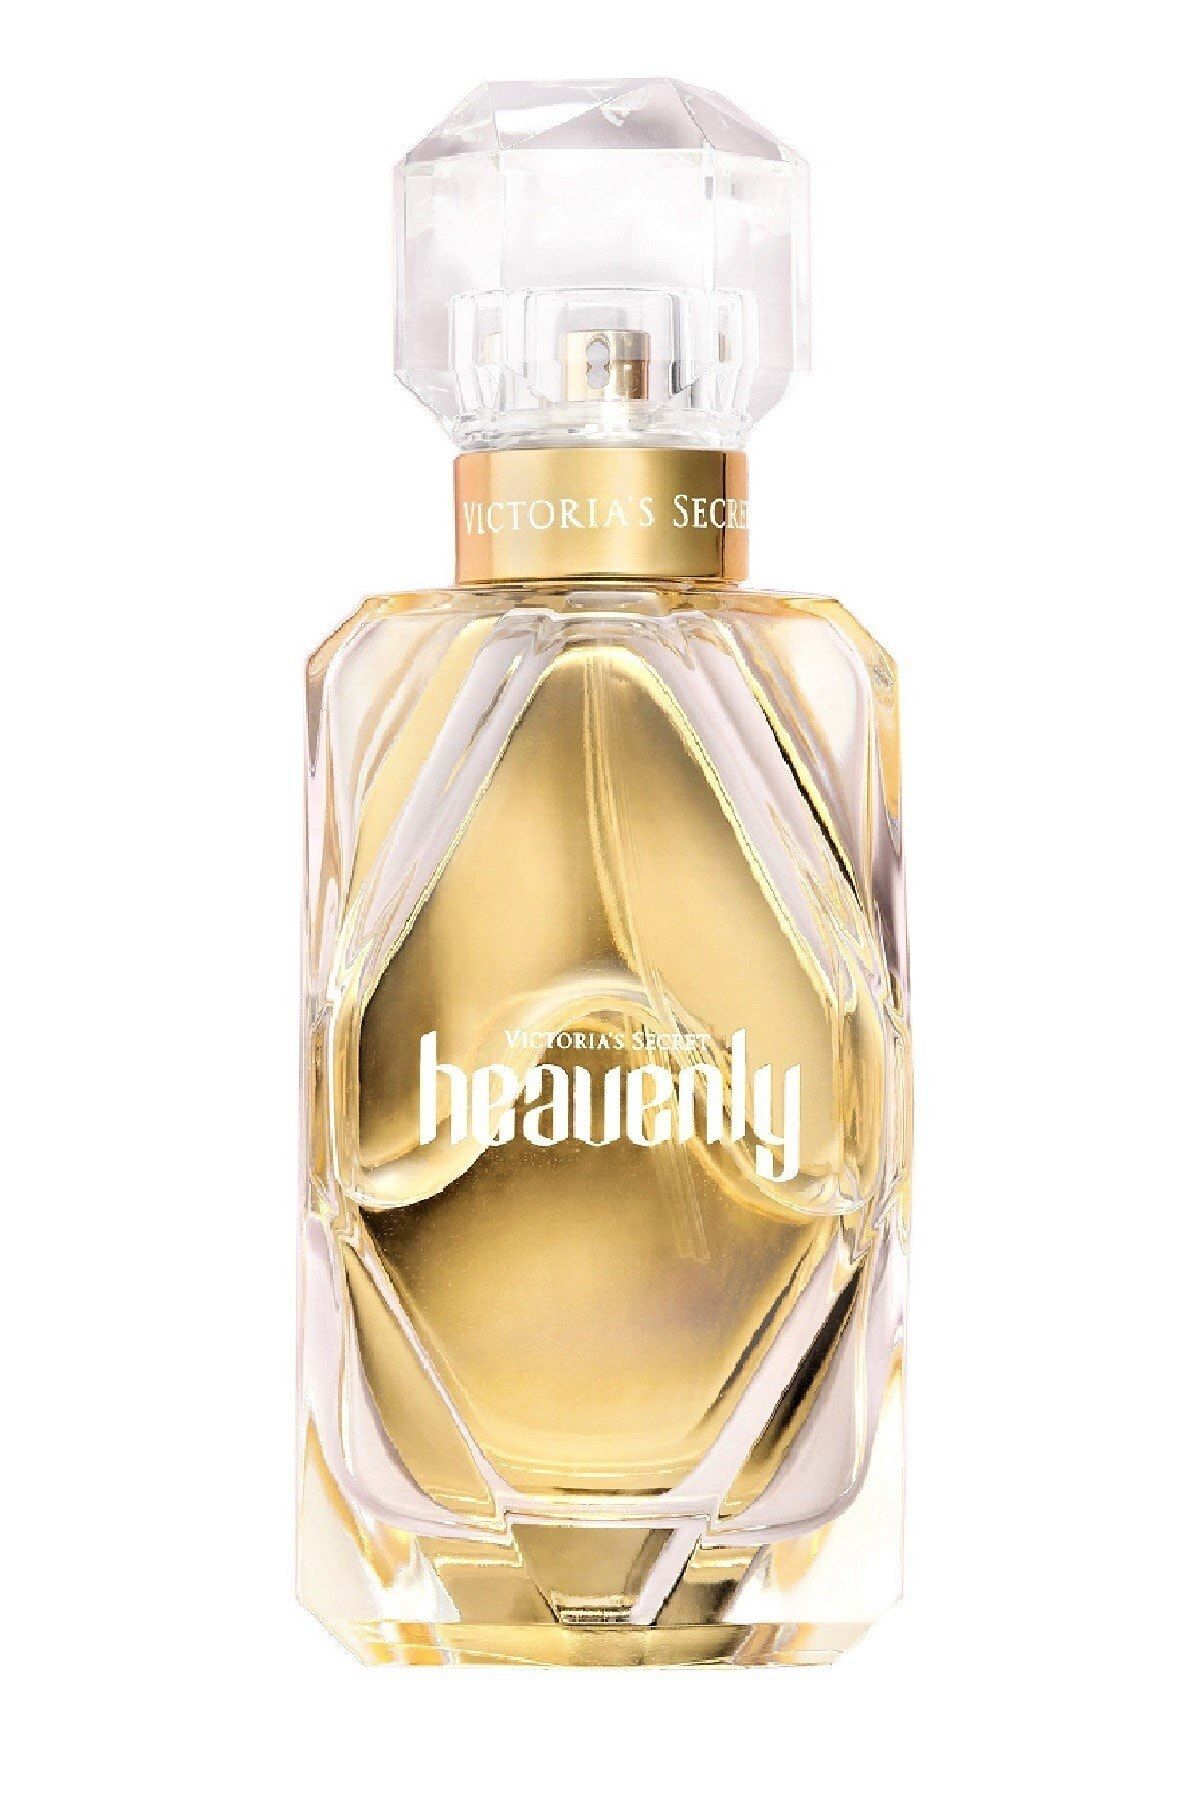 Victoria's Secret Heavenly Edp 100 Ml Kadın Parfümü